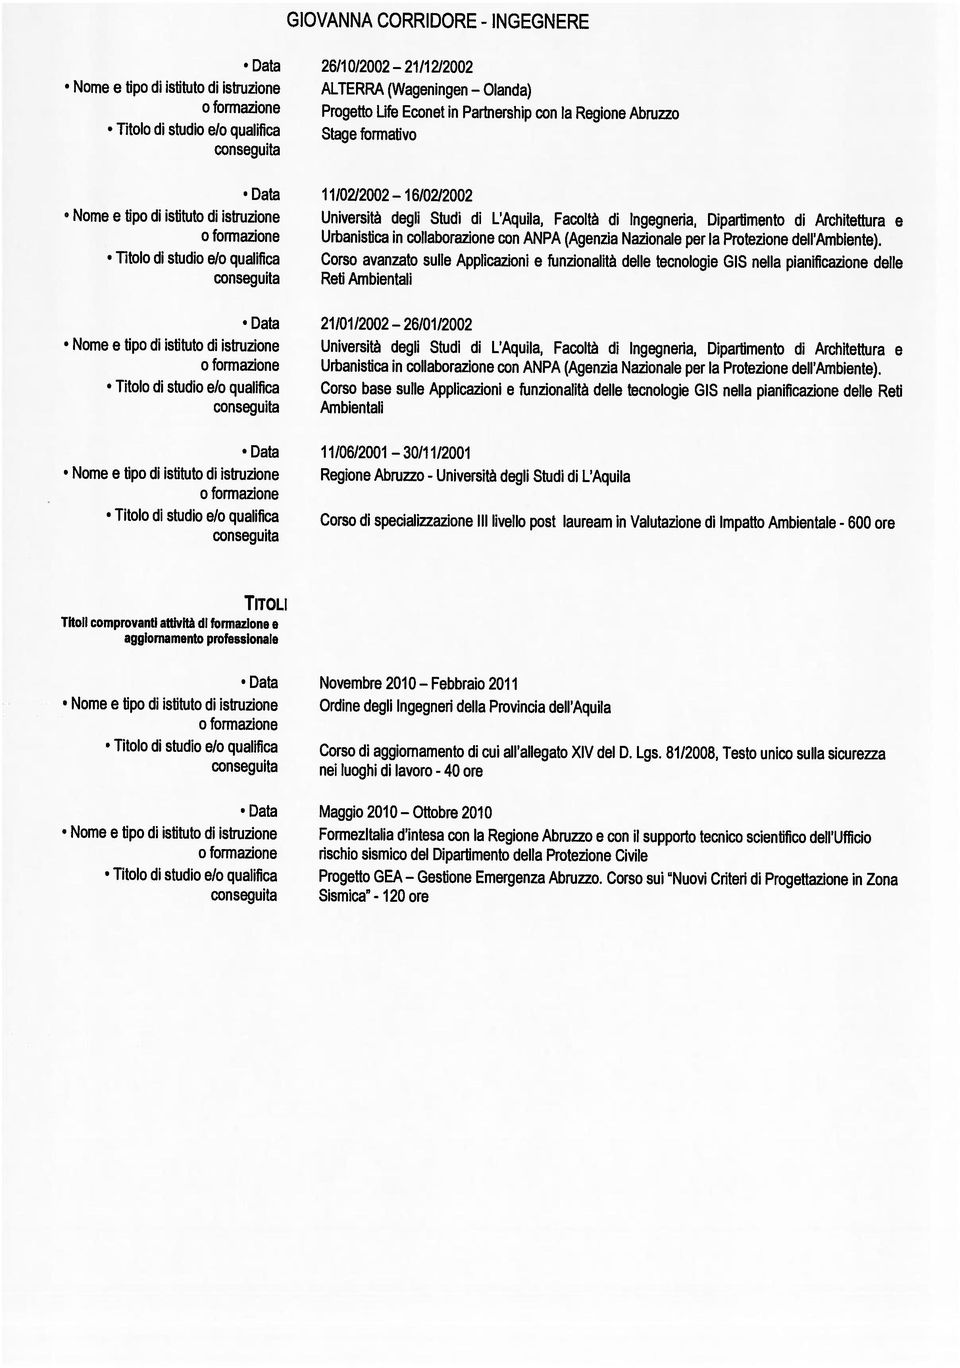 Università degli Studi di L Aquila, Stage formativo 26/10/2002 Progetto Life Econet in Partnership con la Regione Abruzzo TITou tipo di Nome e istituto di istruzione Titoli comprovanti attività di